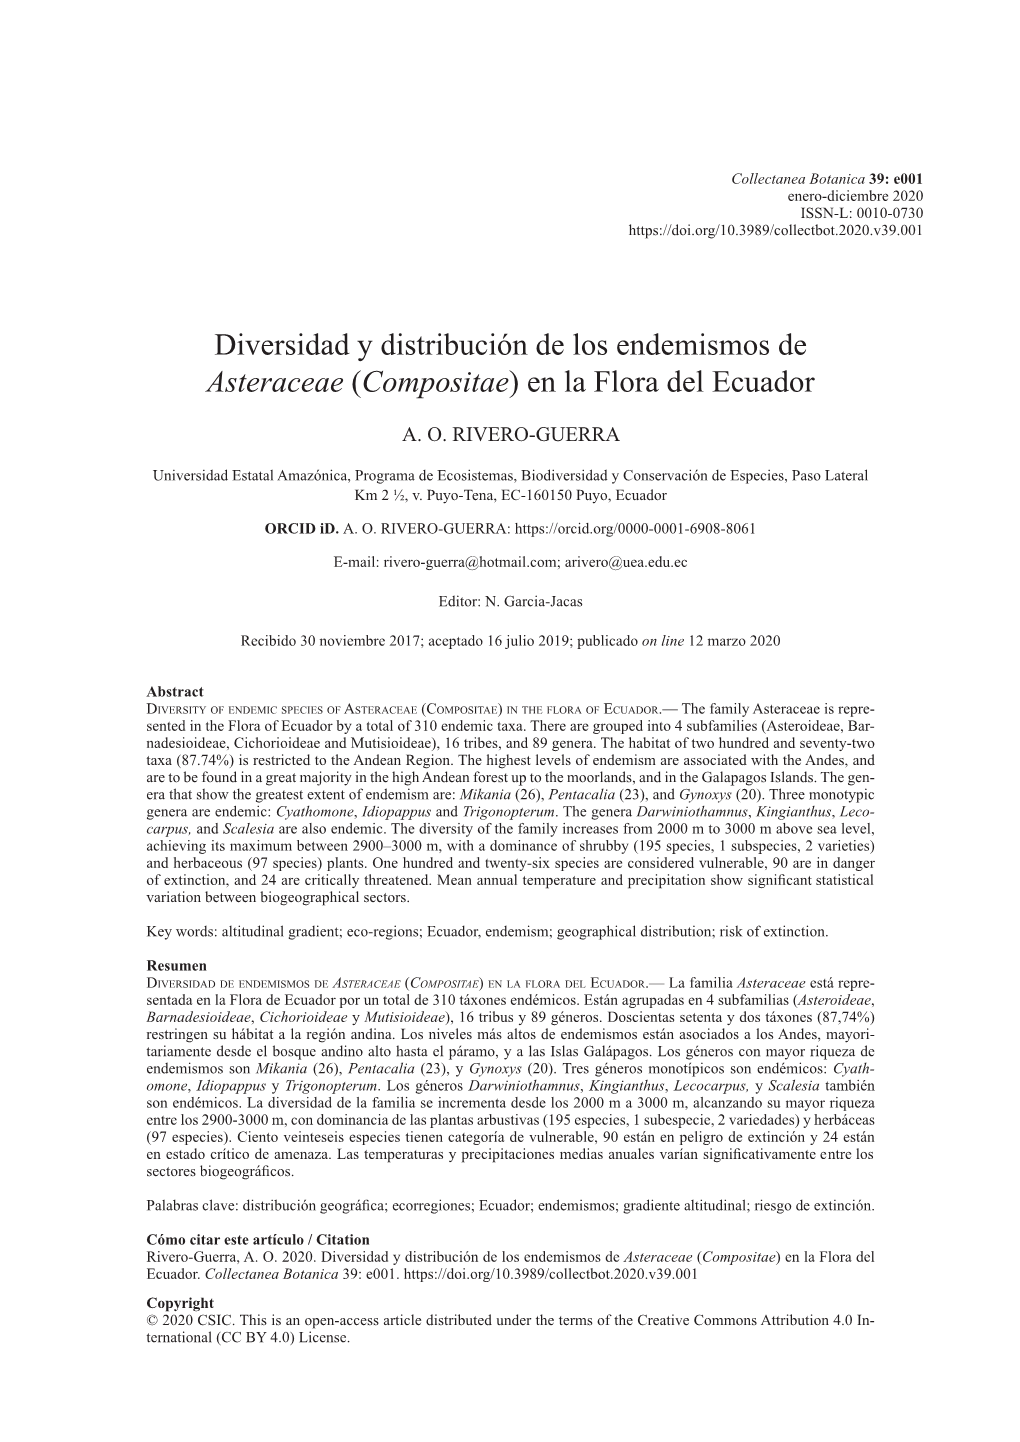 Diversidad Y Distribución De Los Endemismos De Asteraceae (Compositae) En La Flora Del Ecuador